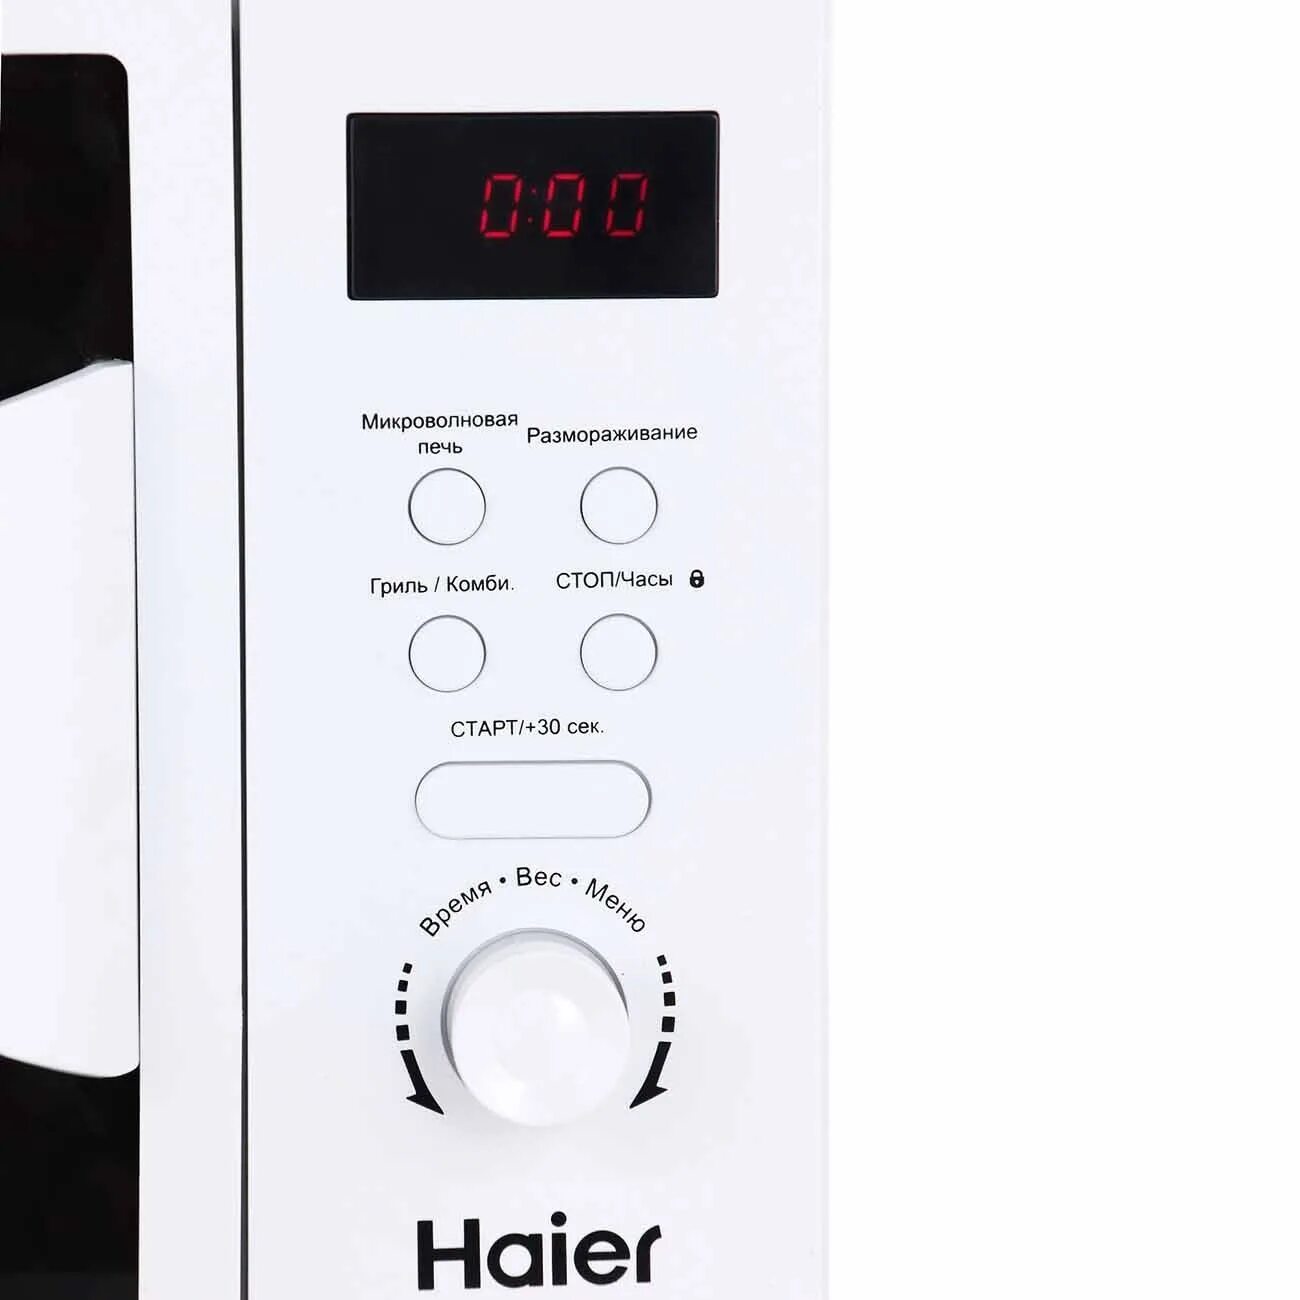 Микроволновая печь haier купить. Микроволновая печь Haier HMX-dg207w. Haier микроволновая печь DG 207w. HMX dg207w микроволновая печь. Микроволновая печь Haier 207w с грилем.